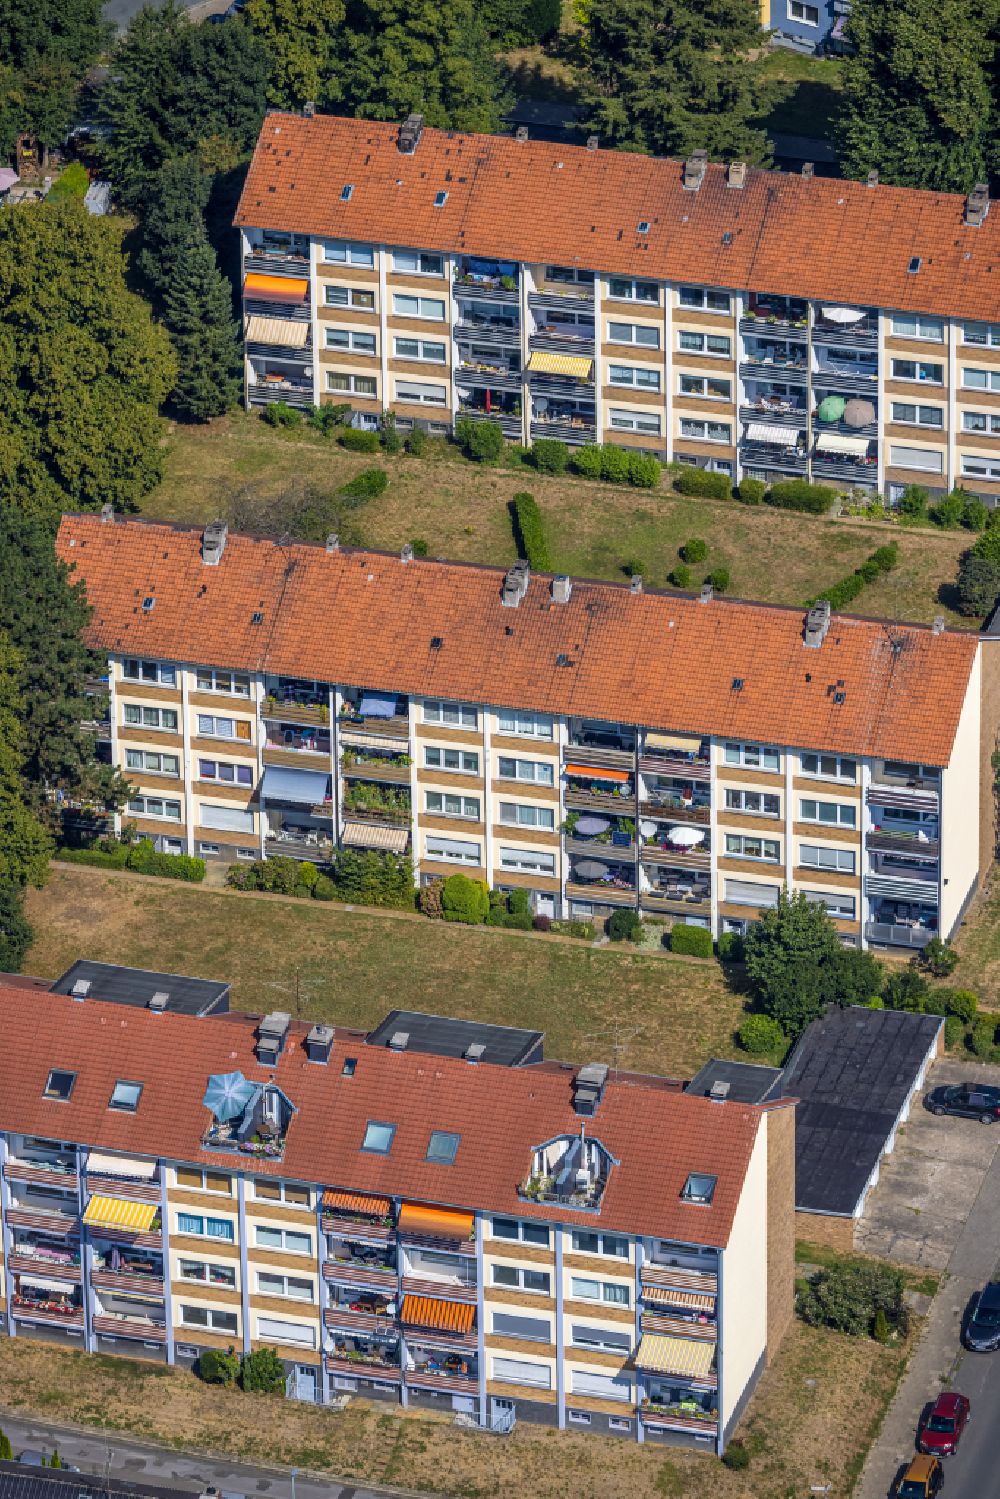 Hattingen von oben - Wohngebiet der Mehrfamilienhaussiedlung in Hattingen im Bundesland Nordrhein-Westfalen, Deutschland